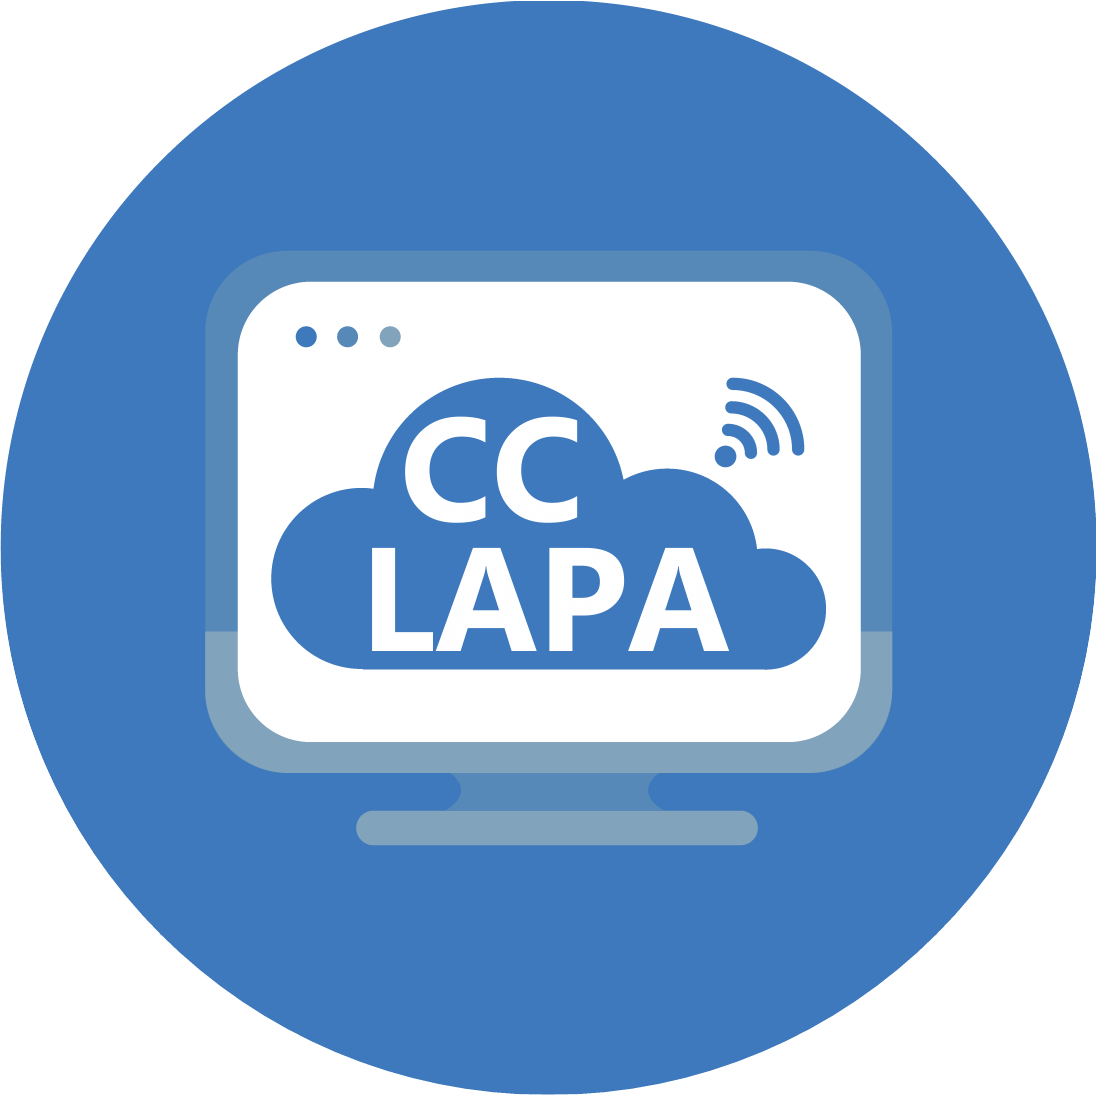 CC LAPA - Eficiência energética, Medição e Telemetria